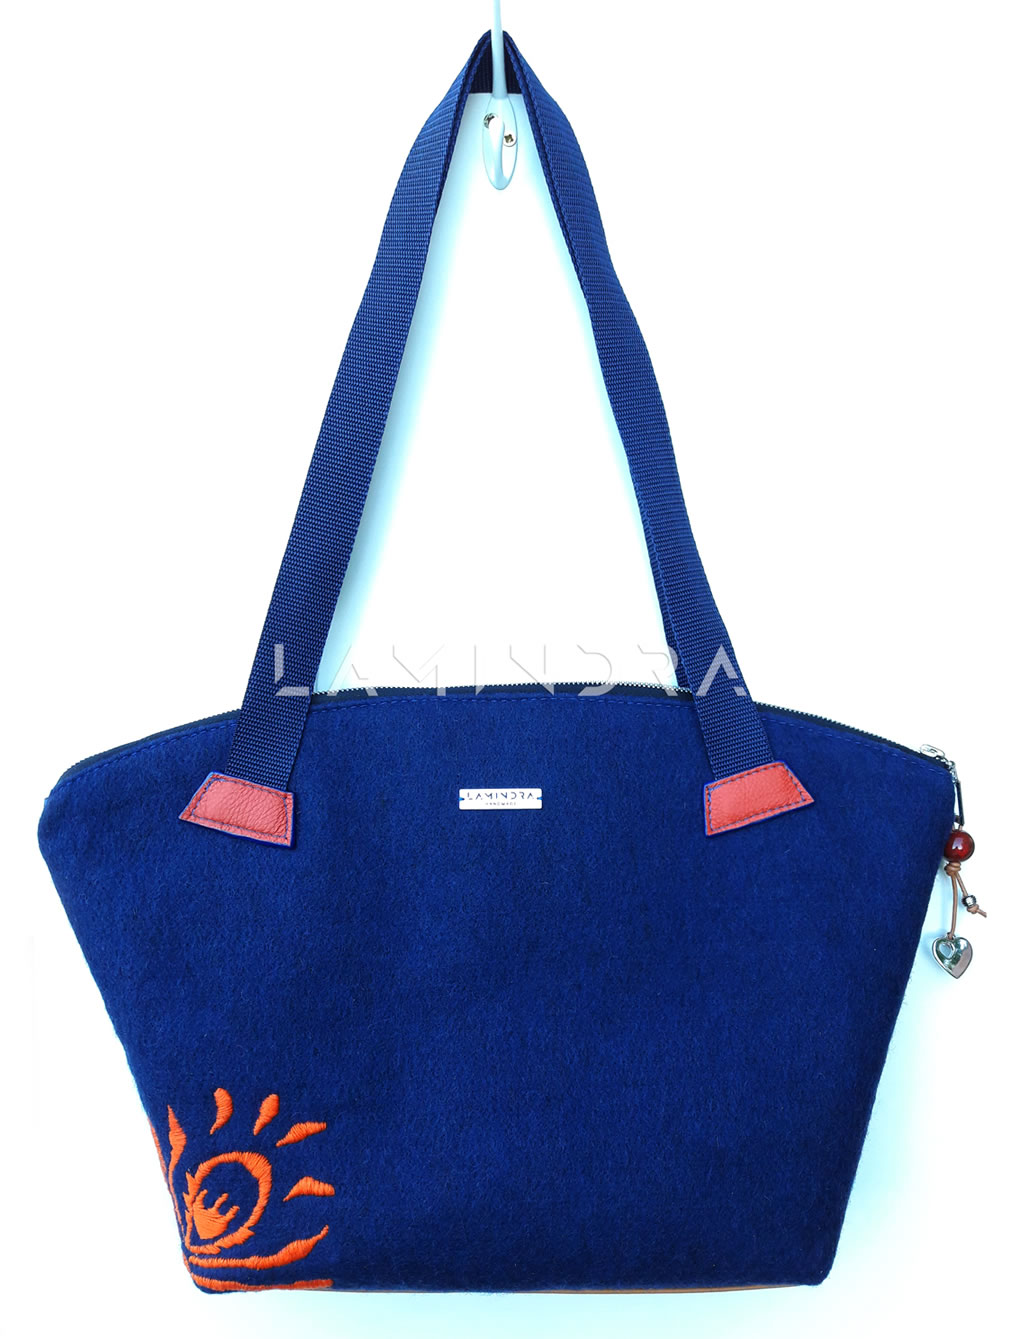 Táskák, hátizsákok, kézműves termékek: TA009, Sötétkék gyapjúfilc válltáska narancssárga hímzéssel